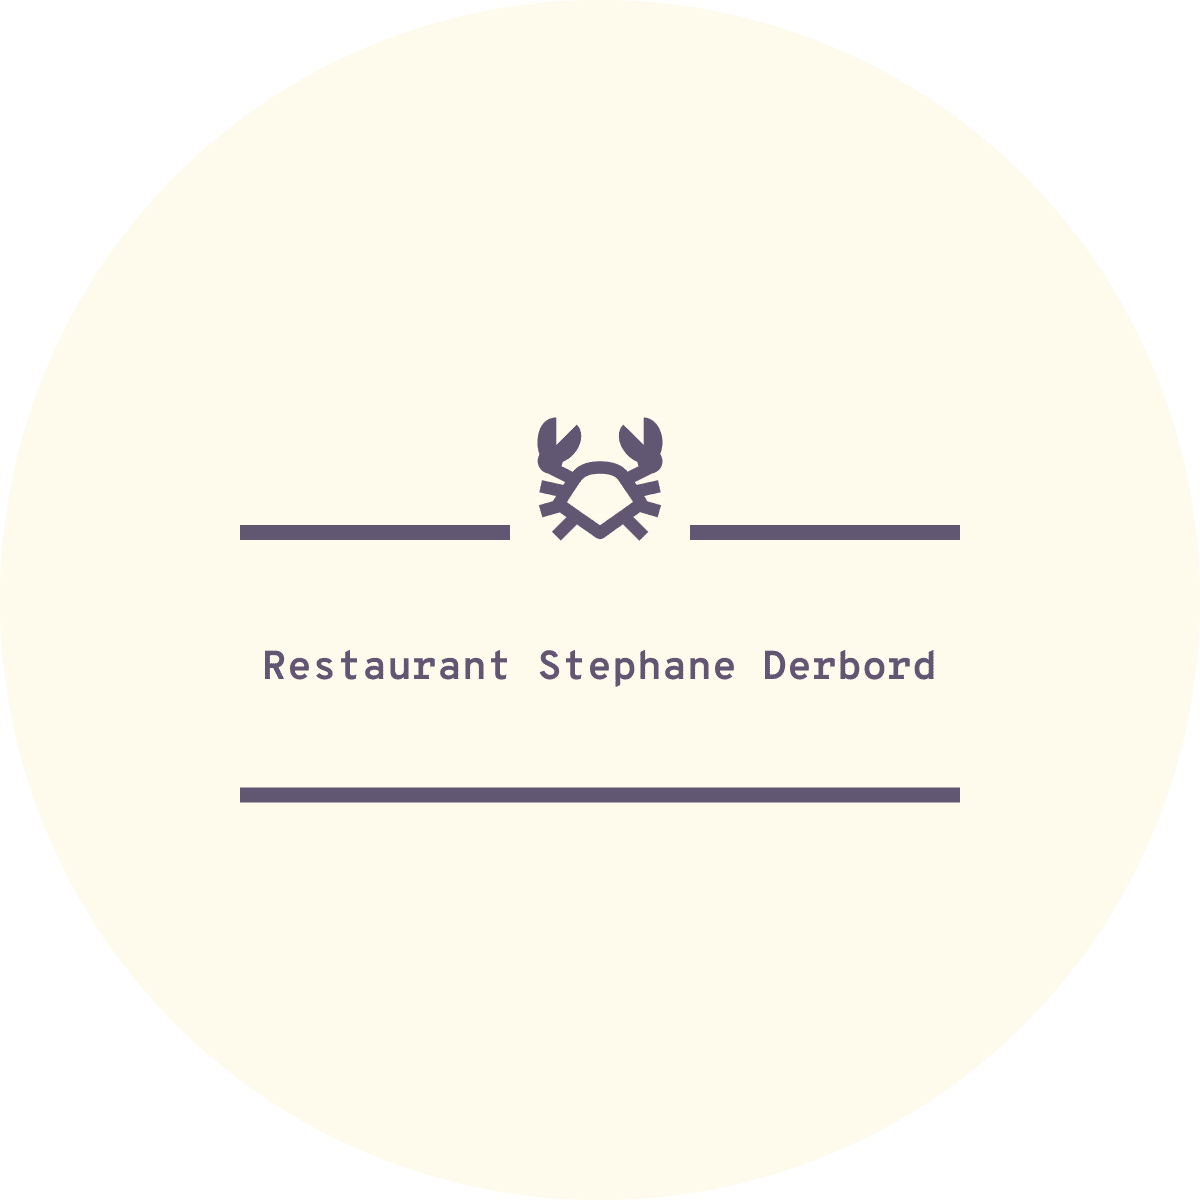 Restaurant Stephane Derbord